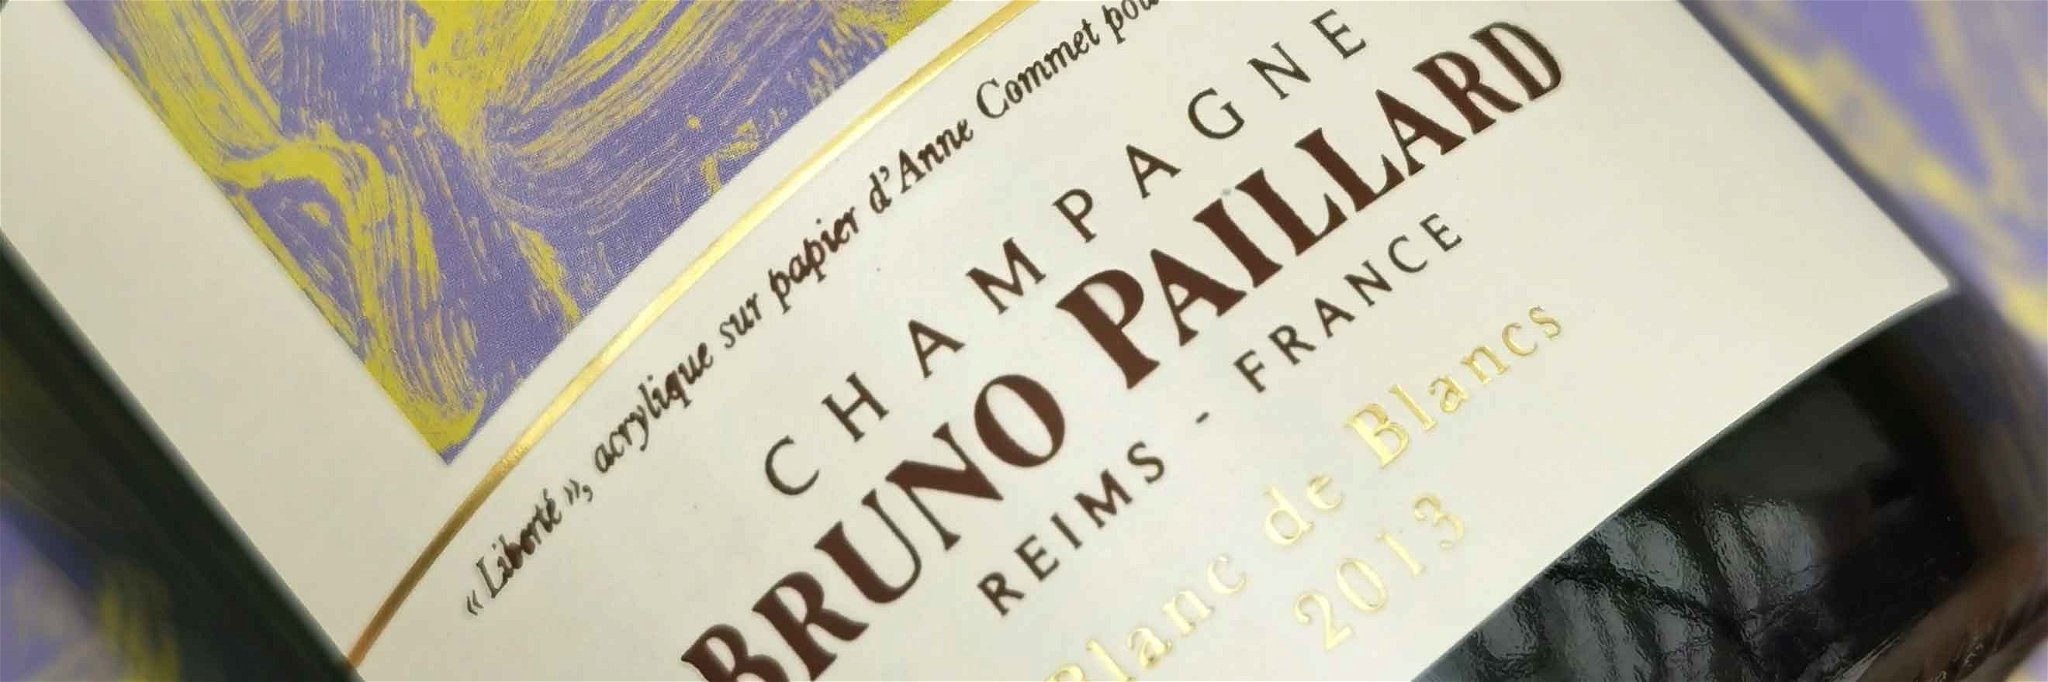 Champagne Bruno Paillard Blanc de Blancs 2013